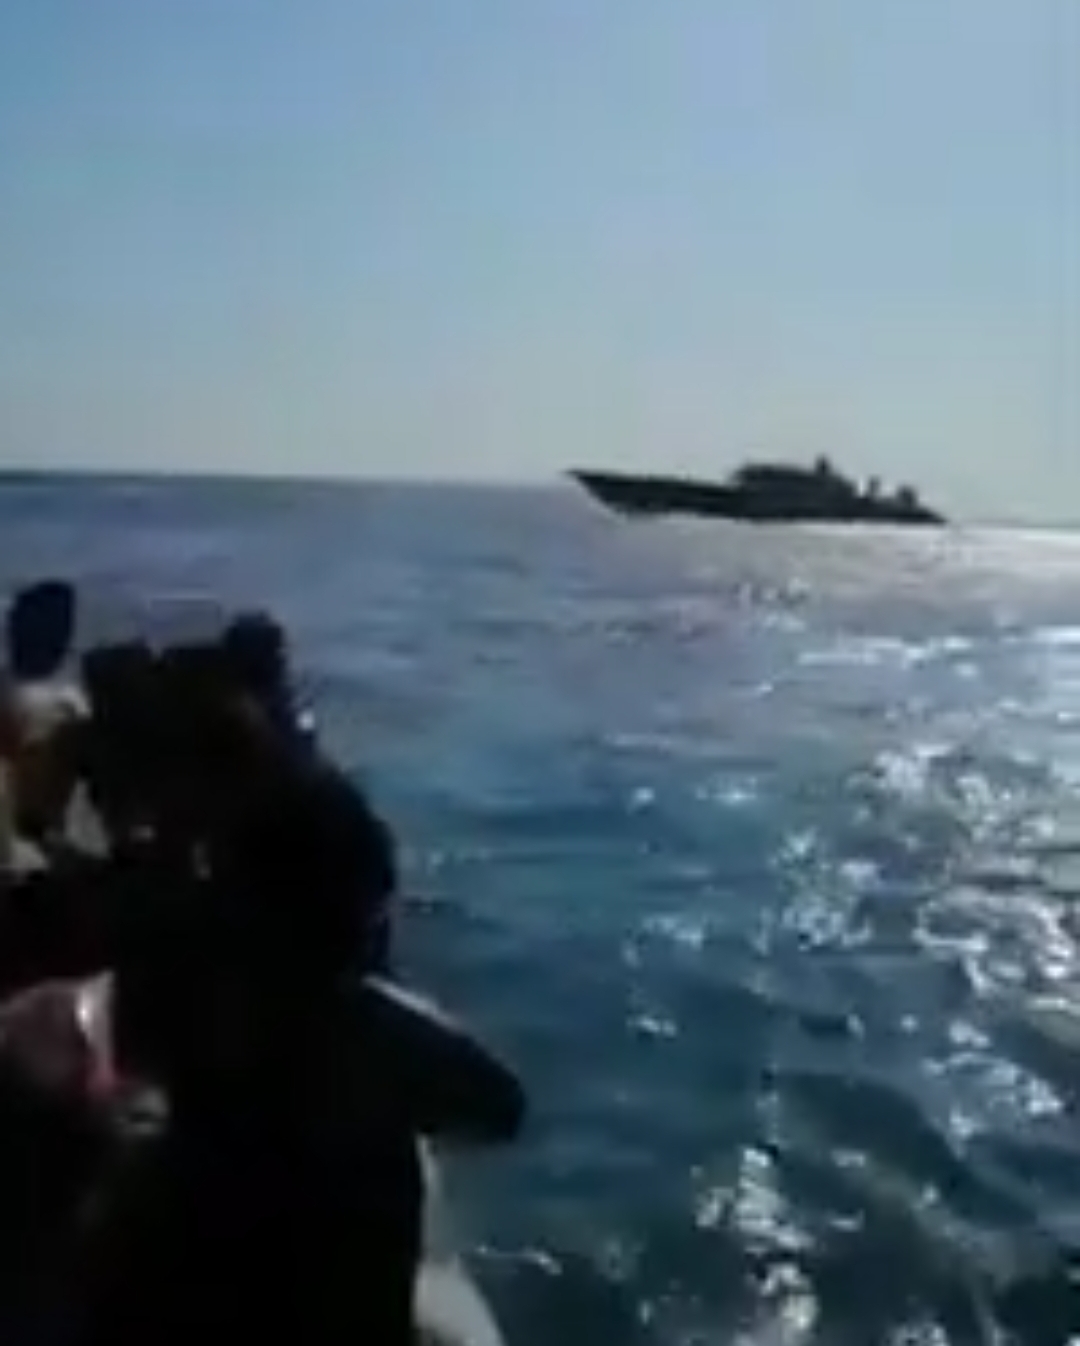 خفر السواحل التركية تلاحق اللاجئين النافرين الى الحدود اليونانية وتعيدهم الى الاراضي التركية قسرا